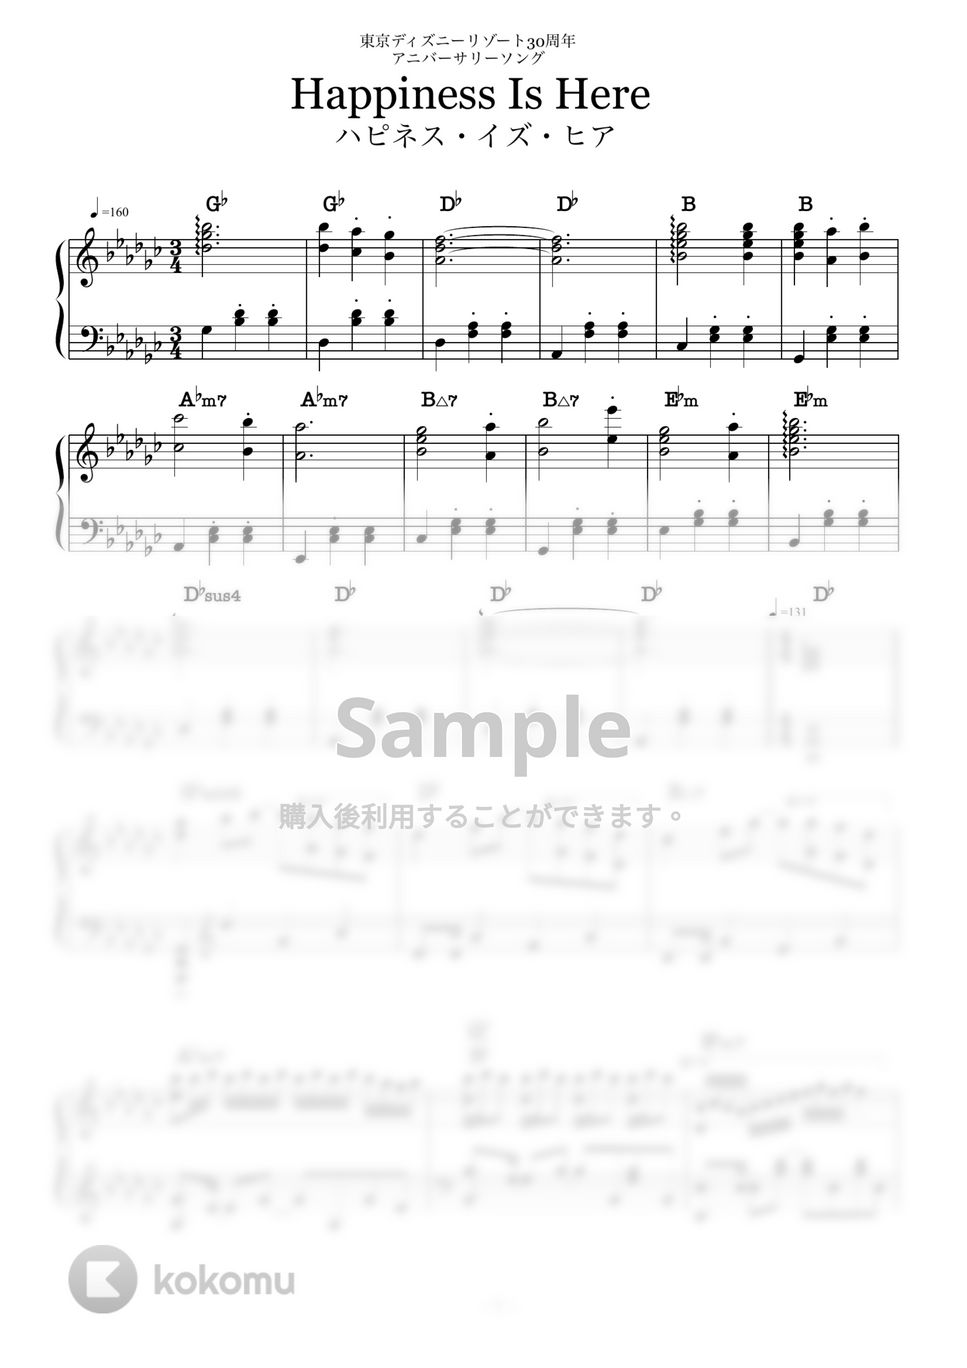 Mark Hammond - ハピネス・イズ・ヒア「ディズニー30周年パレードソング」 (ピアノソロ/ディズニー/コード有) by CAFUNE-かふね-